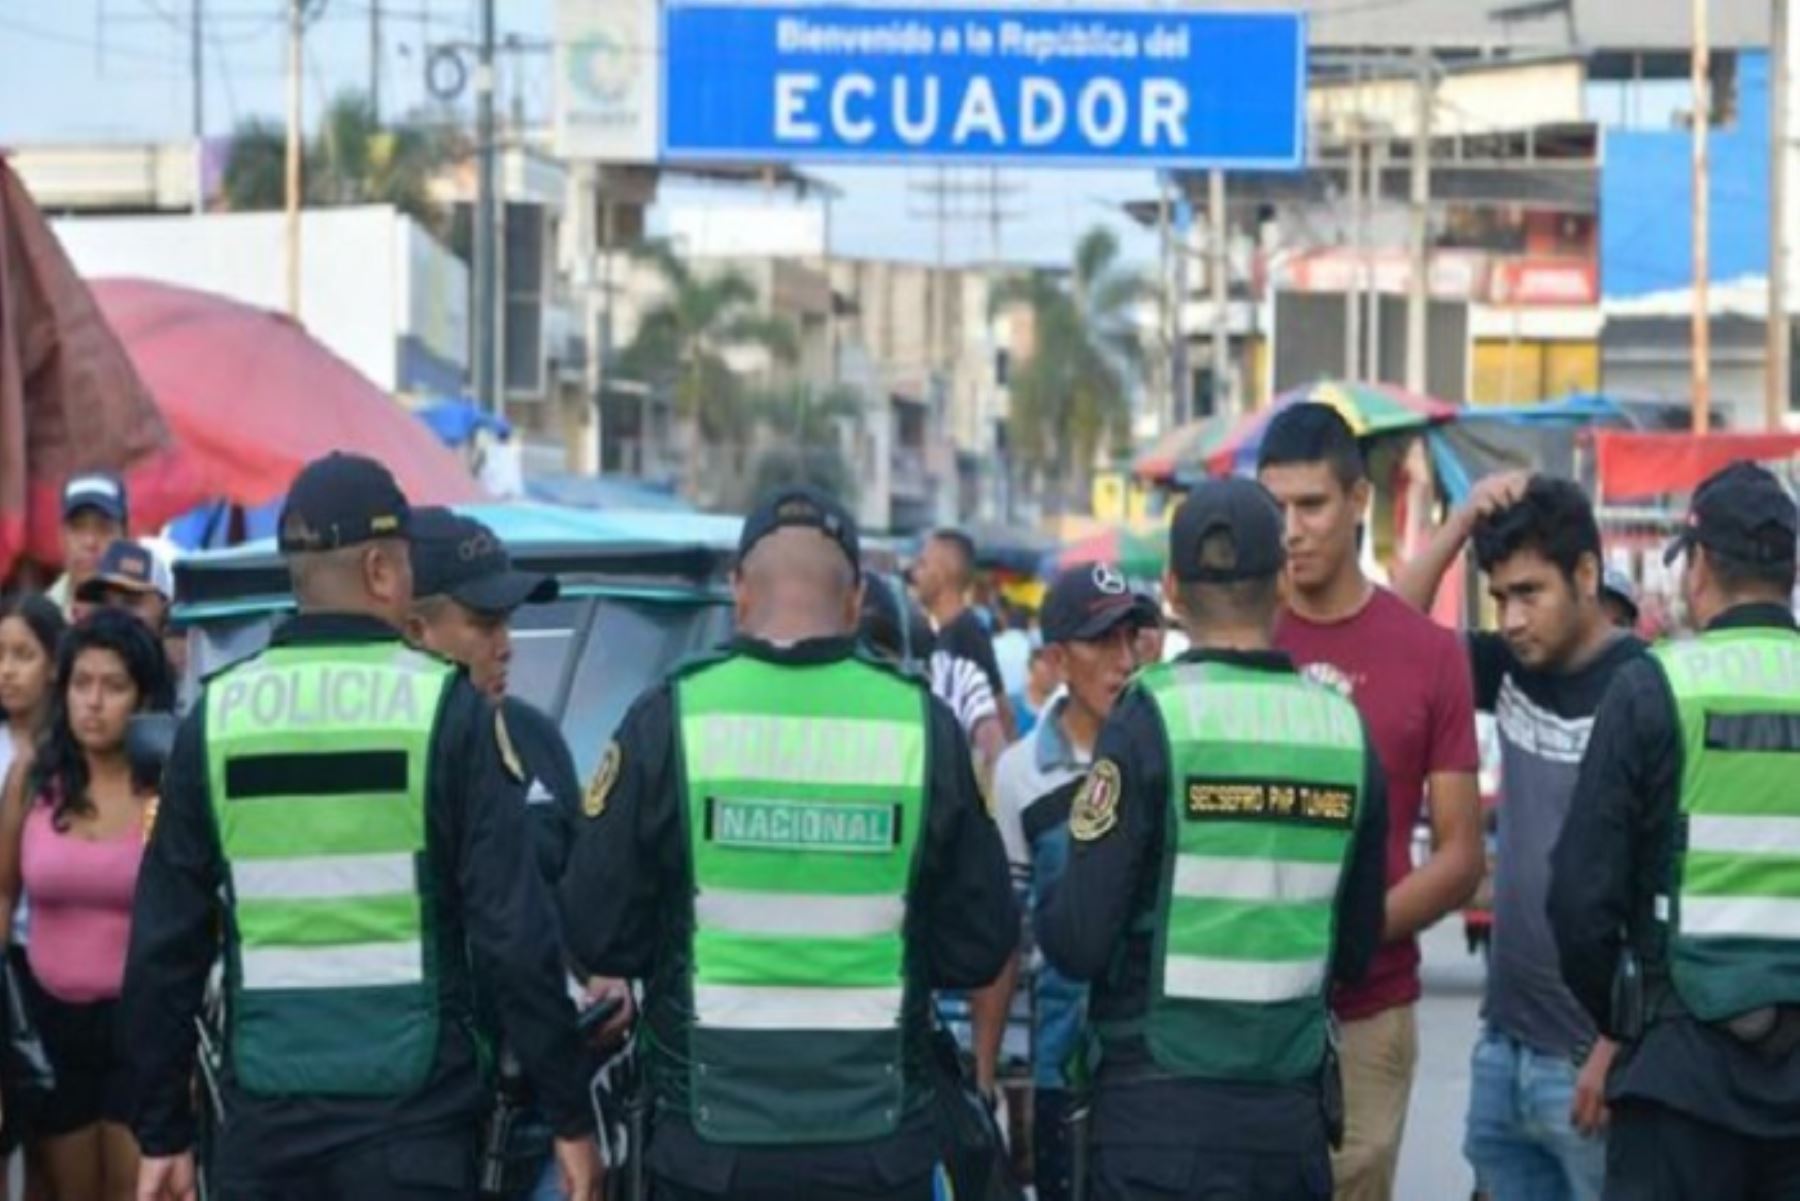 Un tercio de los migrantes son niños e incluso circulan familias enteras con dirección a Ecuador, indicando que es un lugar de tránsito hasta llegar a Colombia y, posteriormente, a Venezuela, en la mayoría de los casos.